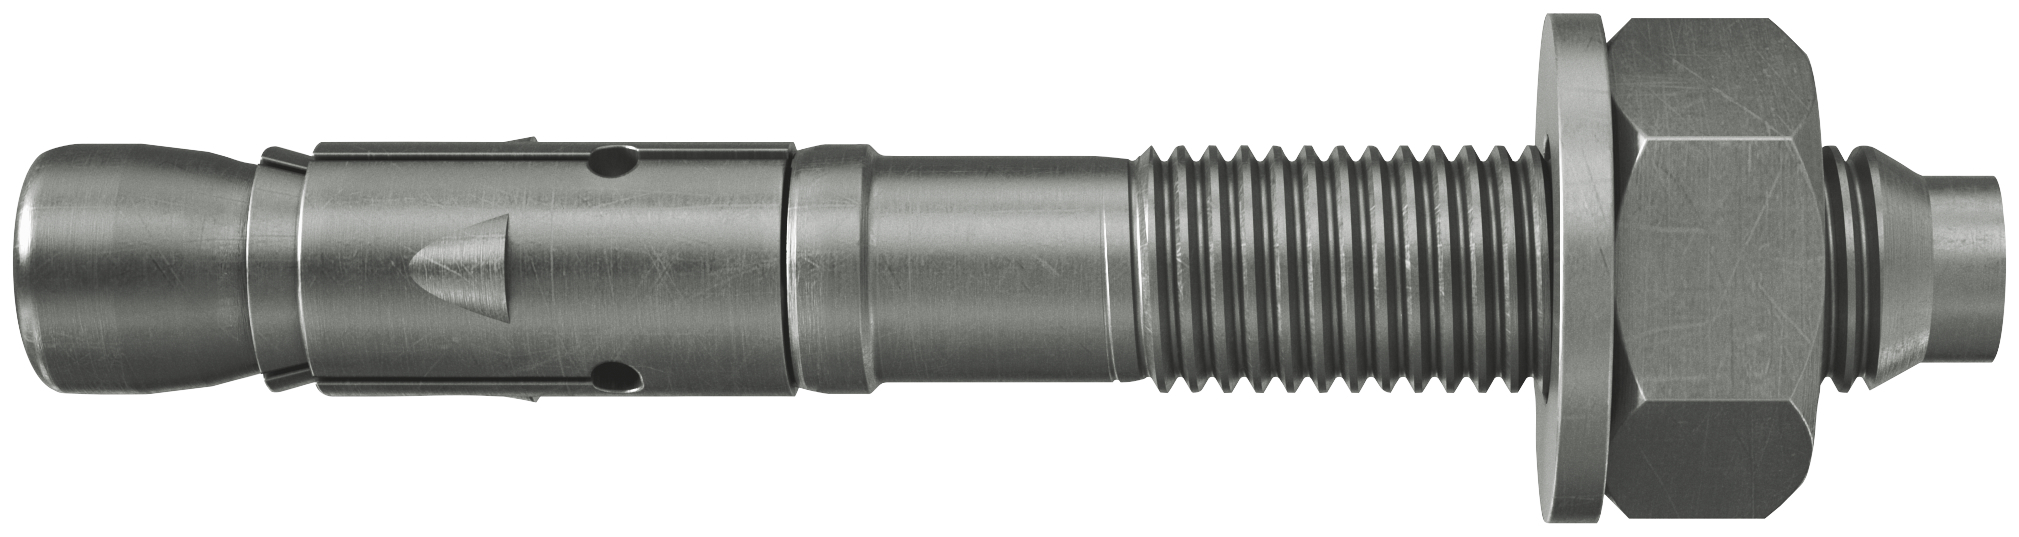 fischer Tassello acciaio FAZ II 6/10 A4 (50 Pz.) L'ancorante ad espansione ad alte prestazioni per carichi statici su calcestruzzo fessurato e per applicazioni sismiche. Versione in acciaio inossidabile con classe di resistenza alla corrosione CRC III..